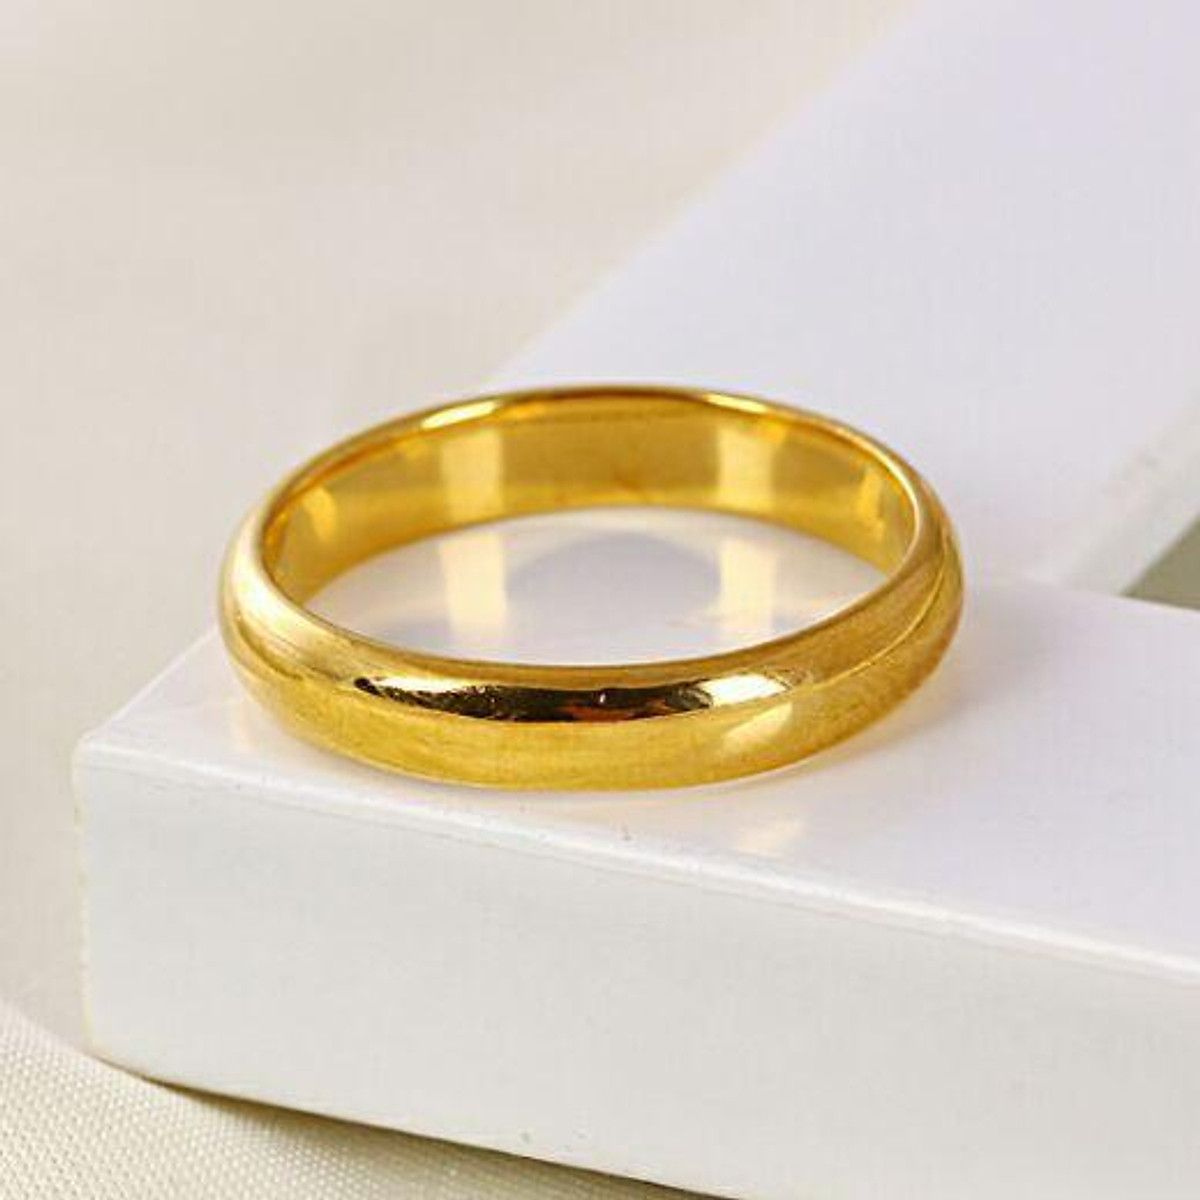 Nhẫn cưới trơn 1 chỉ mạ vàng 24k (Thái Lan)